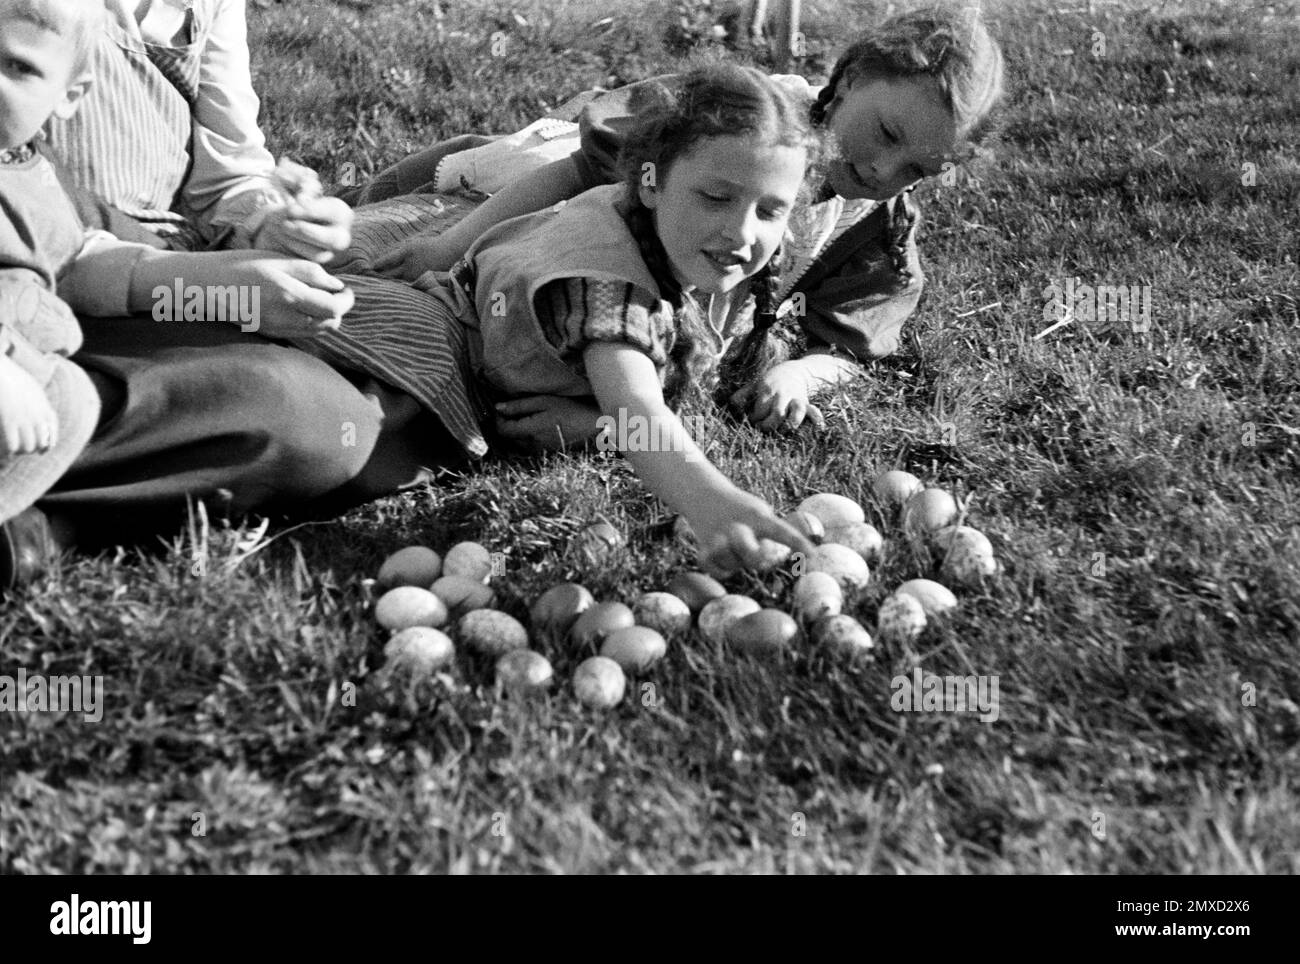 Sichtung der gefundenen Ostereier, Schwalm-Eder-Kreis in Hessen, 1938. Sighting of the Easter eggs found, Schwalm-Eder region in Hesse, 1938. Stock Photo